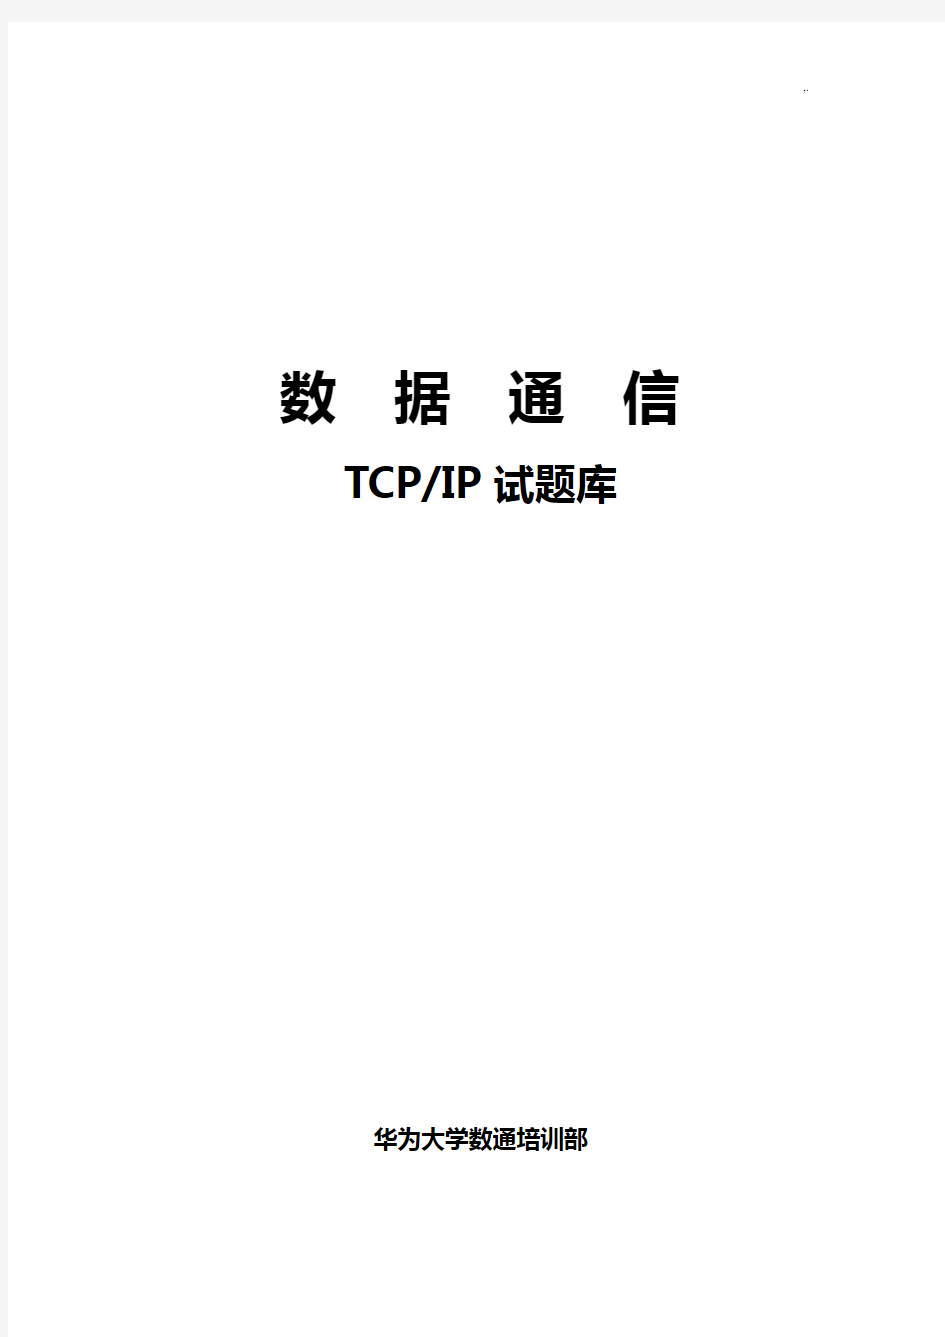 TCPIP试汇总题库